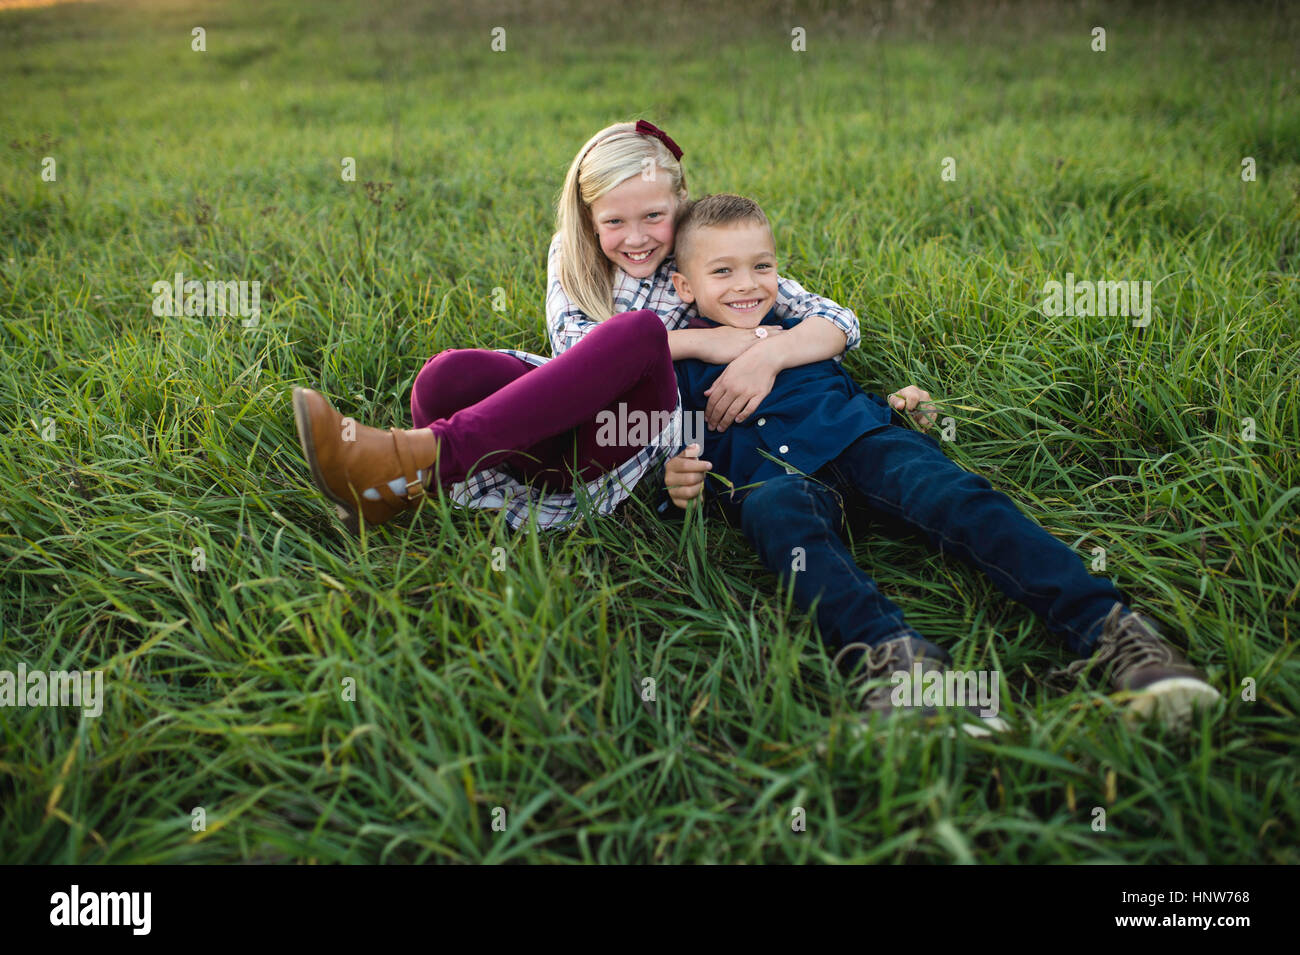 Bruder und Schwester zusammen auf dem Rasen liegend Stockfoto